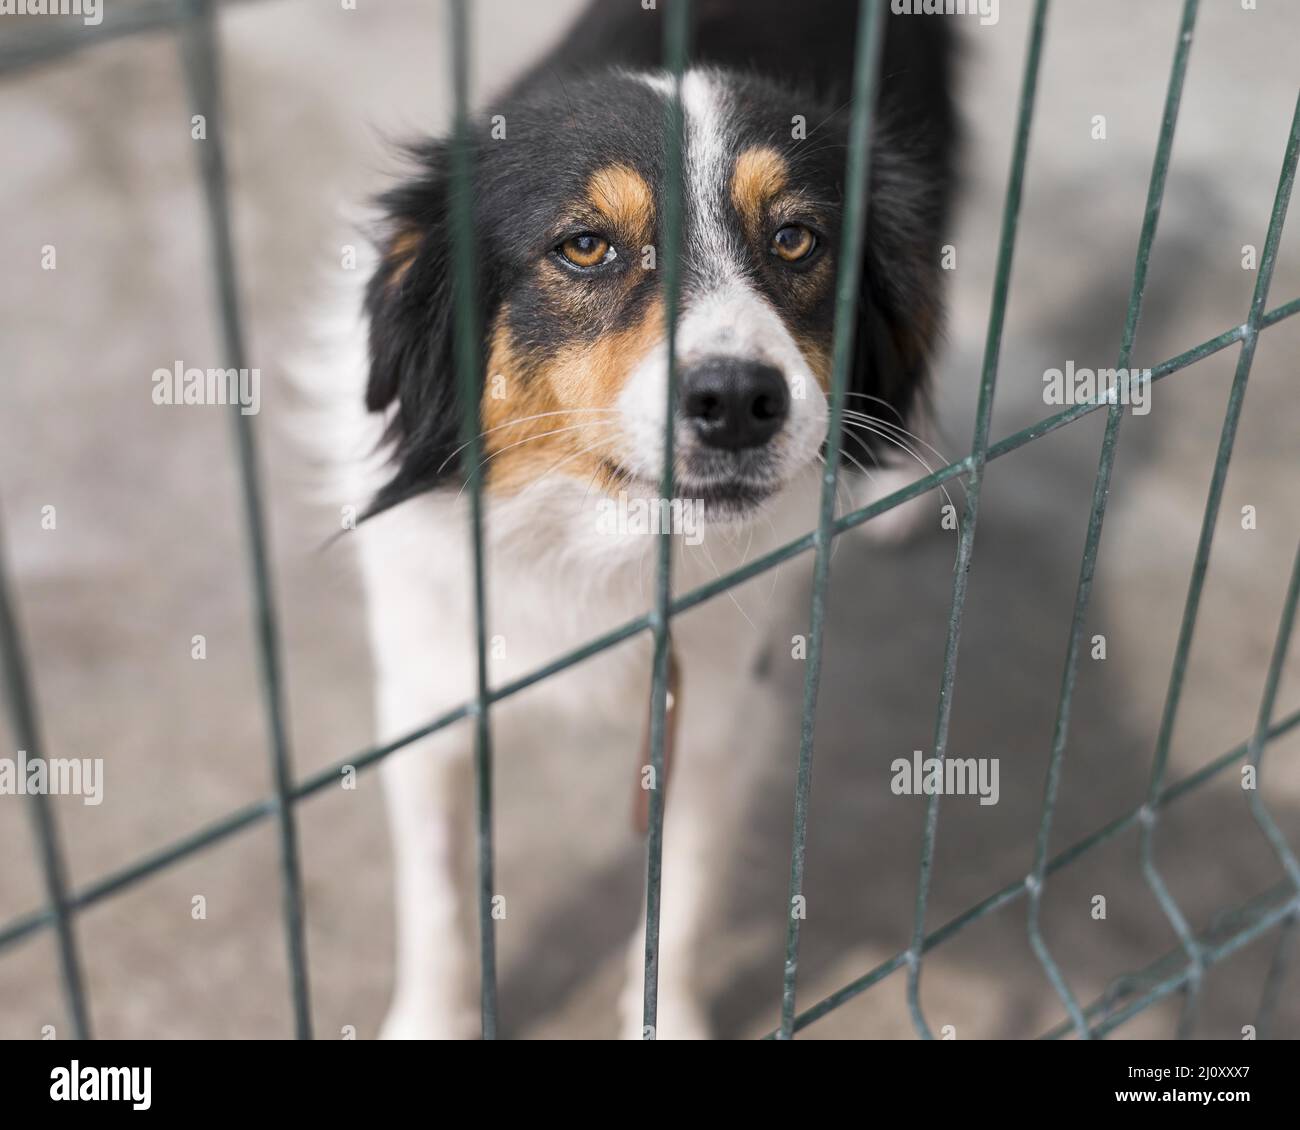 Traurige Rettung Hund Zaun Adoption Schutz. Hochwertige Fotos Stockfoto